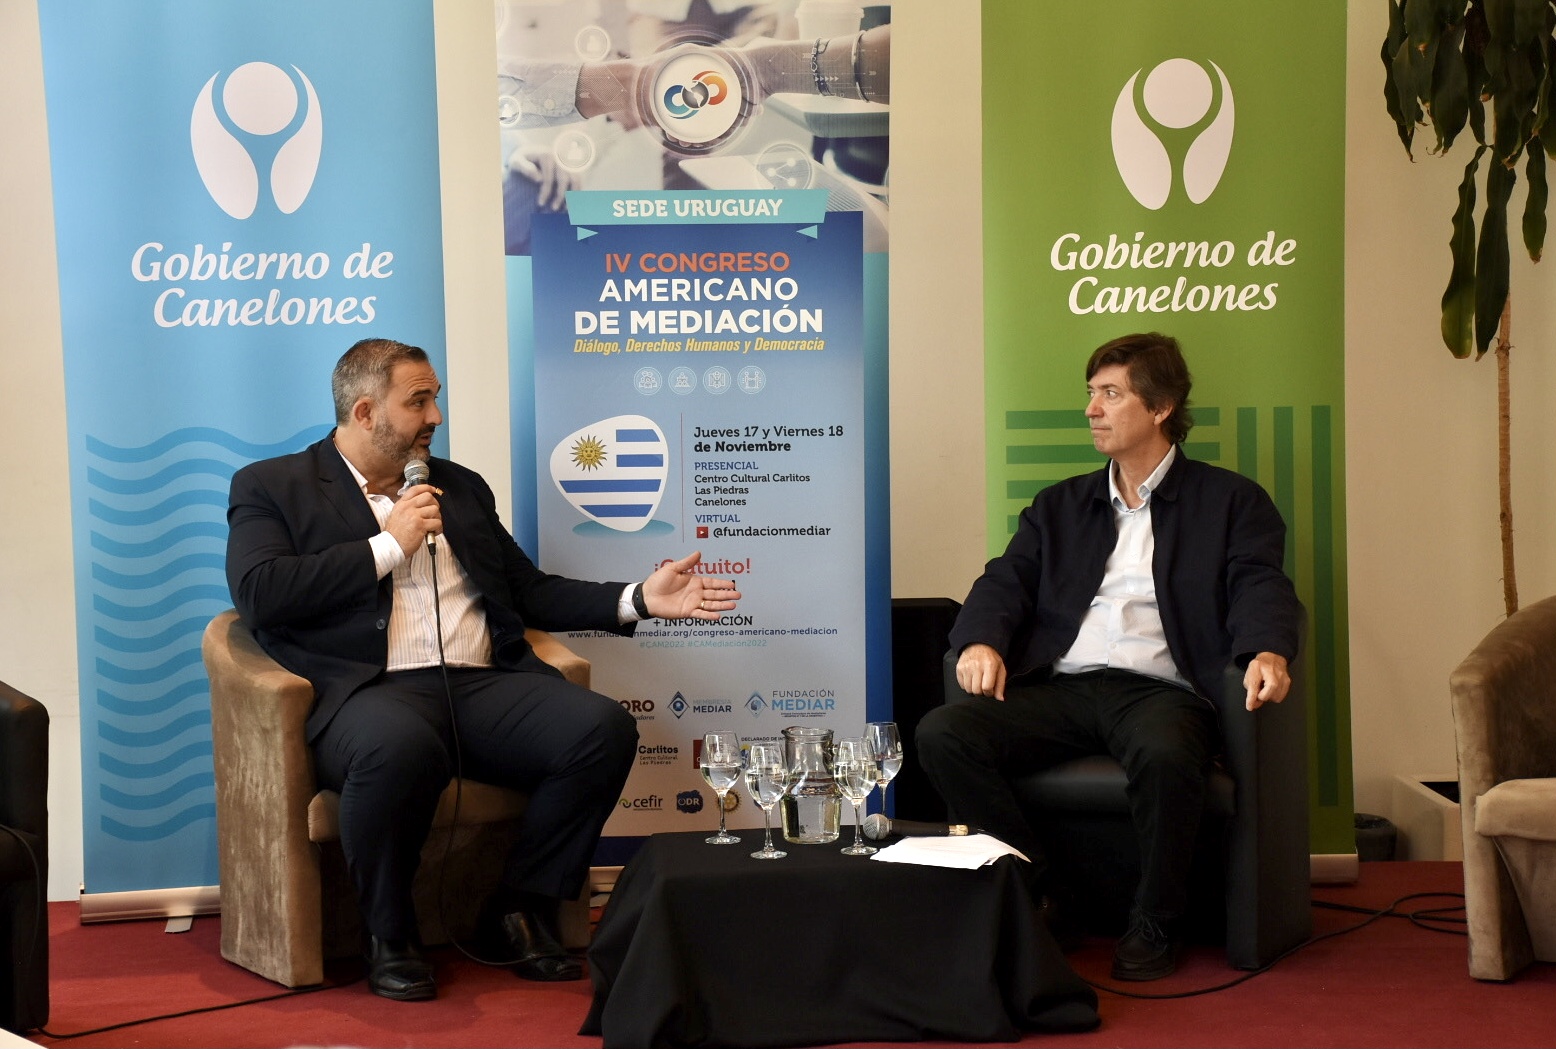 Con la participación de expertos nacionales e internacionales, se llevó a cabo el IV Congreso Americano de Mediación en la ciudad de Las Piedras